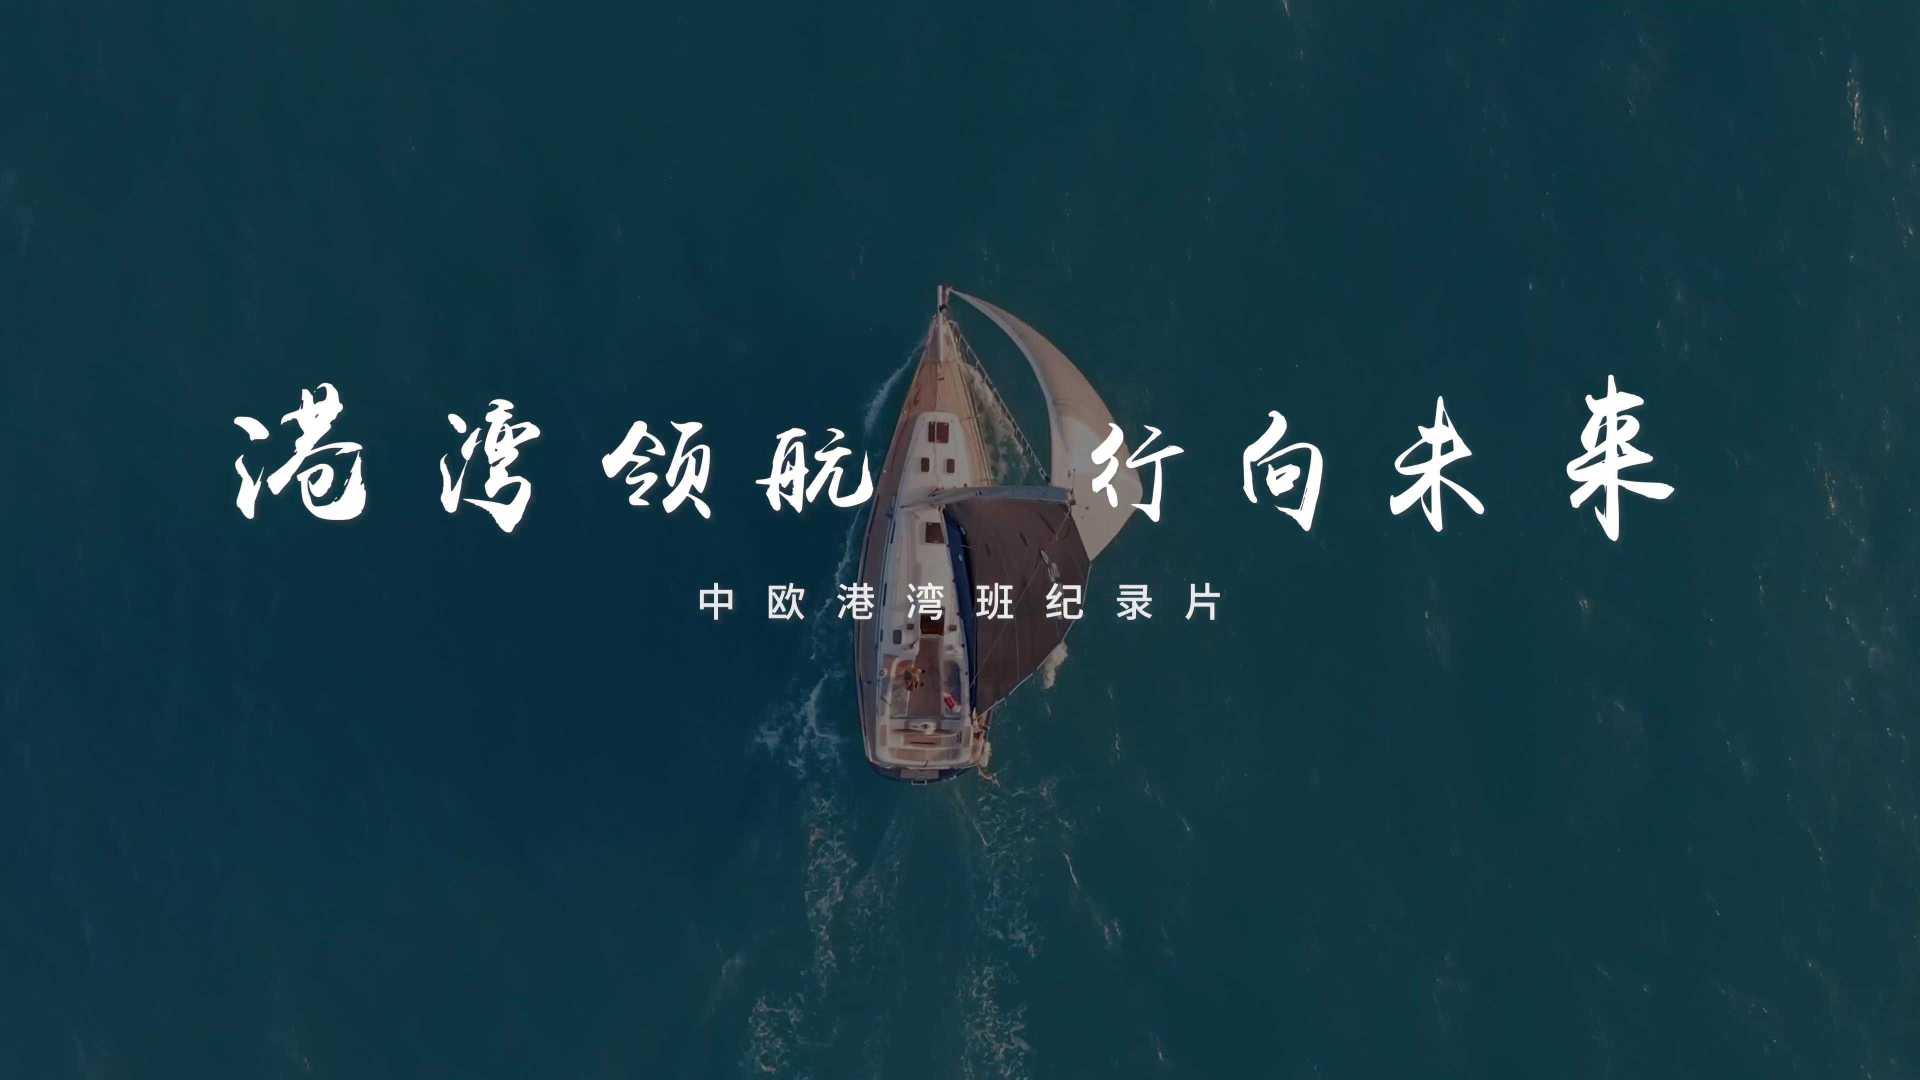 中欧港湾班纪录片《港湾领航·行向未来》